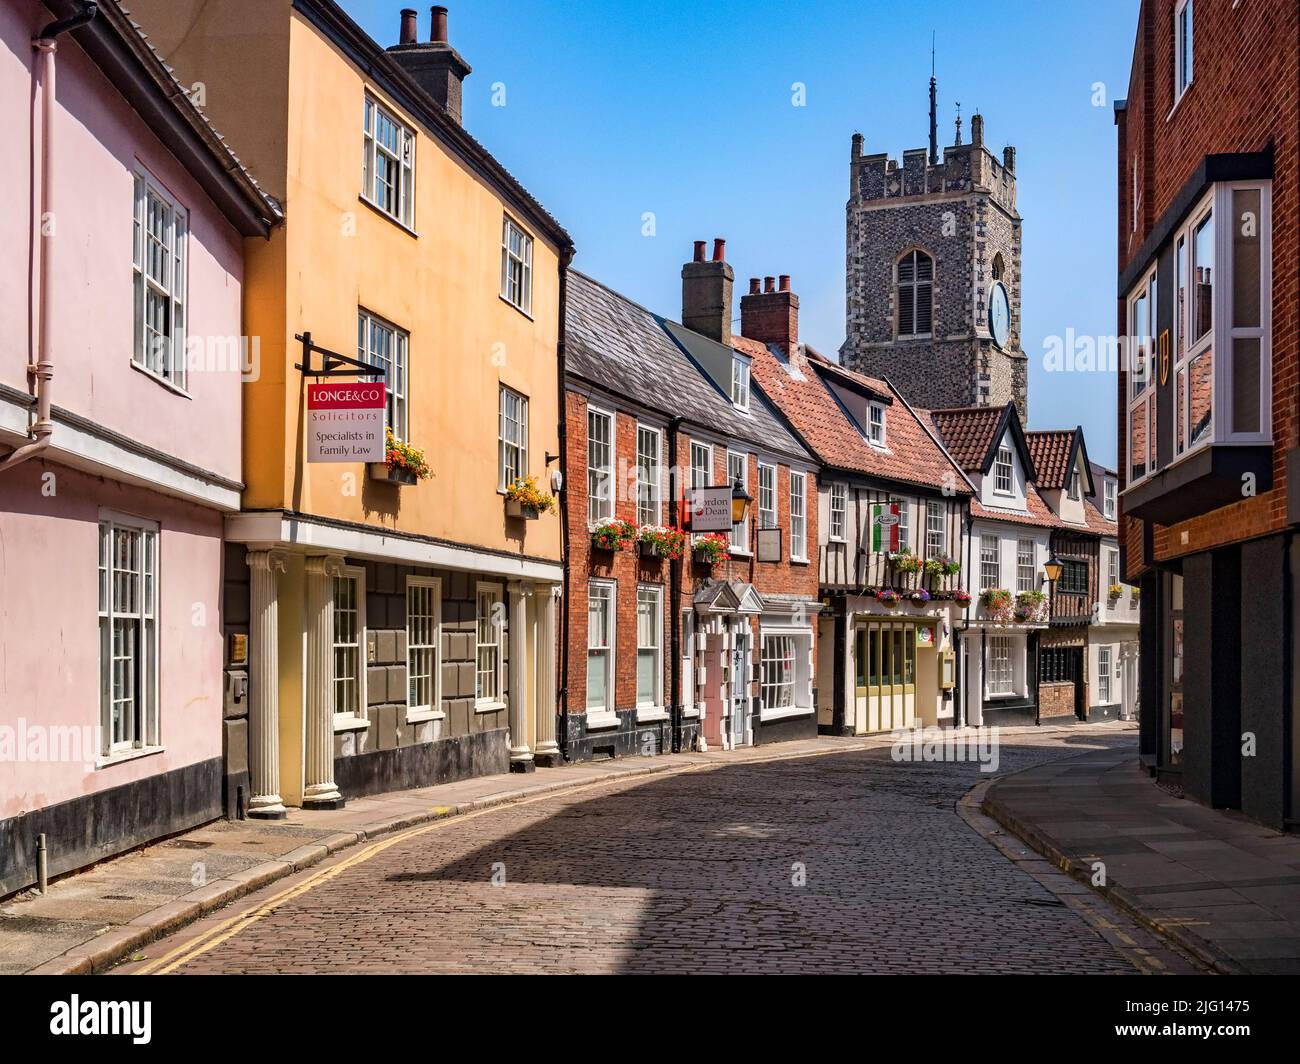 29 giugno 2019: Norwich, Norfolk - Princes Street è una storica strada acciottolata nel centro di Norwich, Norfolk, con molti edifici antichi e interessanti Foto Stock